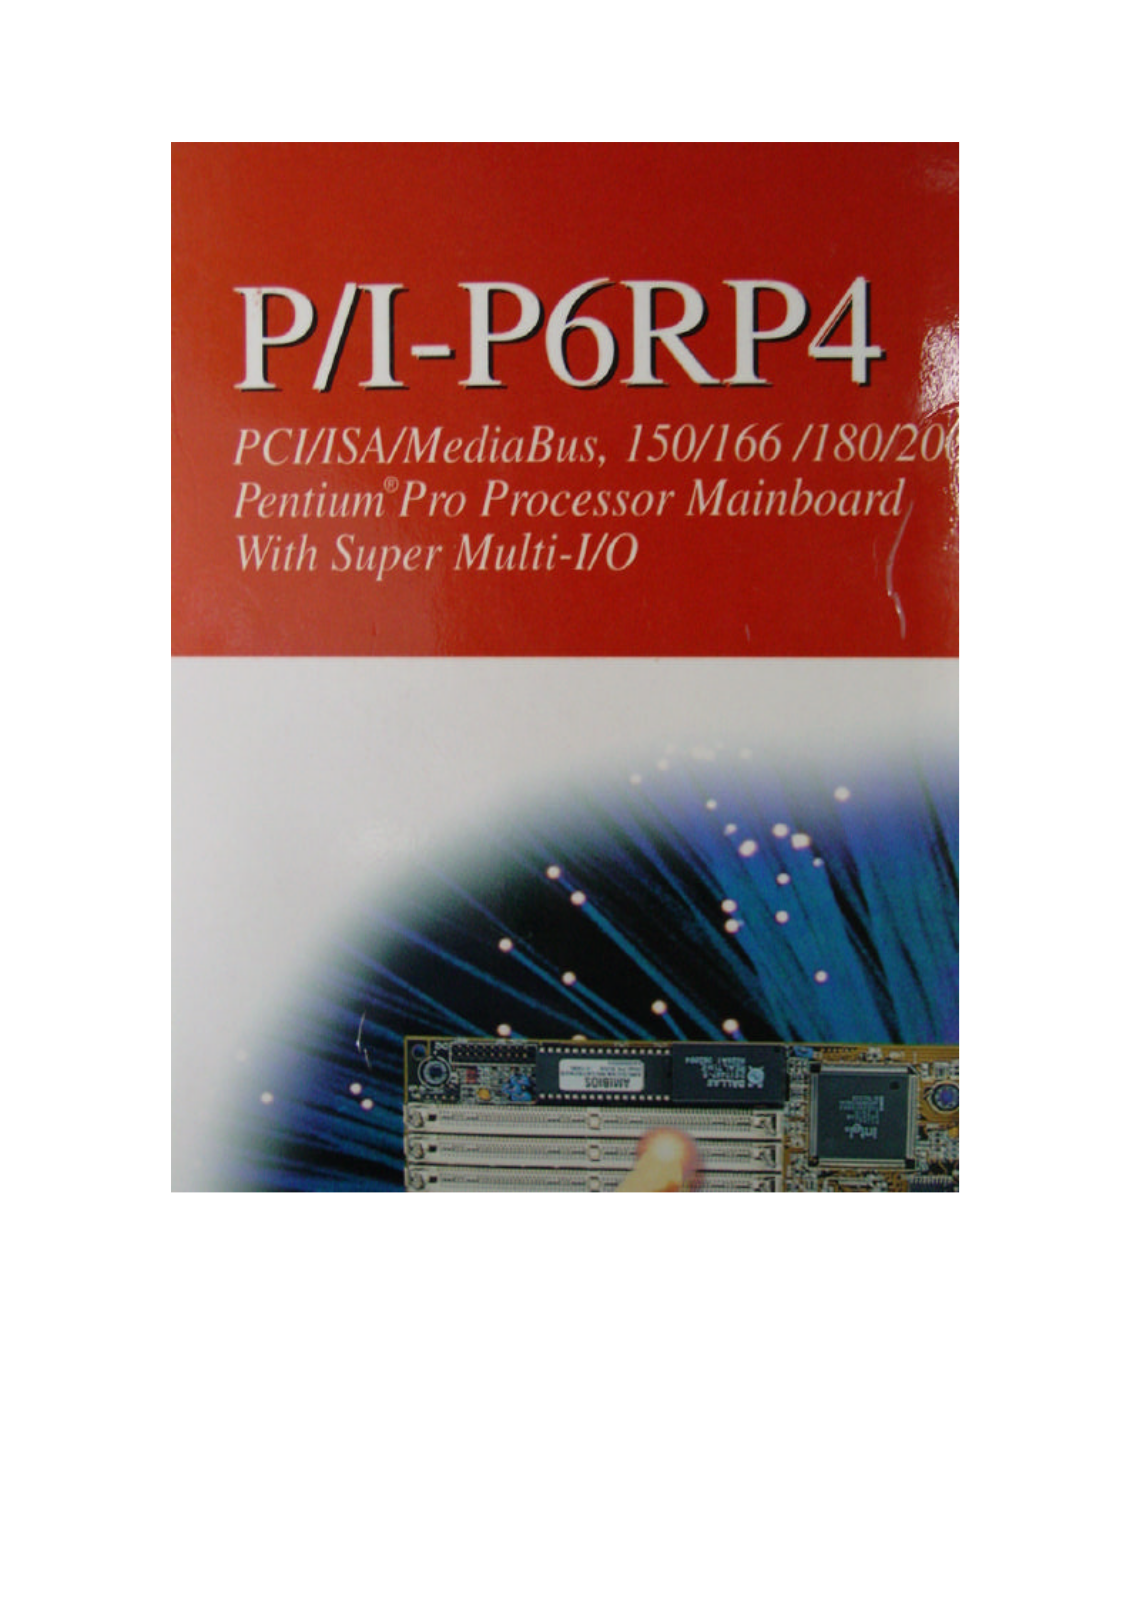 ASUS PI-P6RP4 User Manual